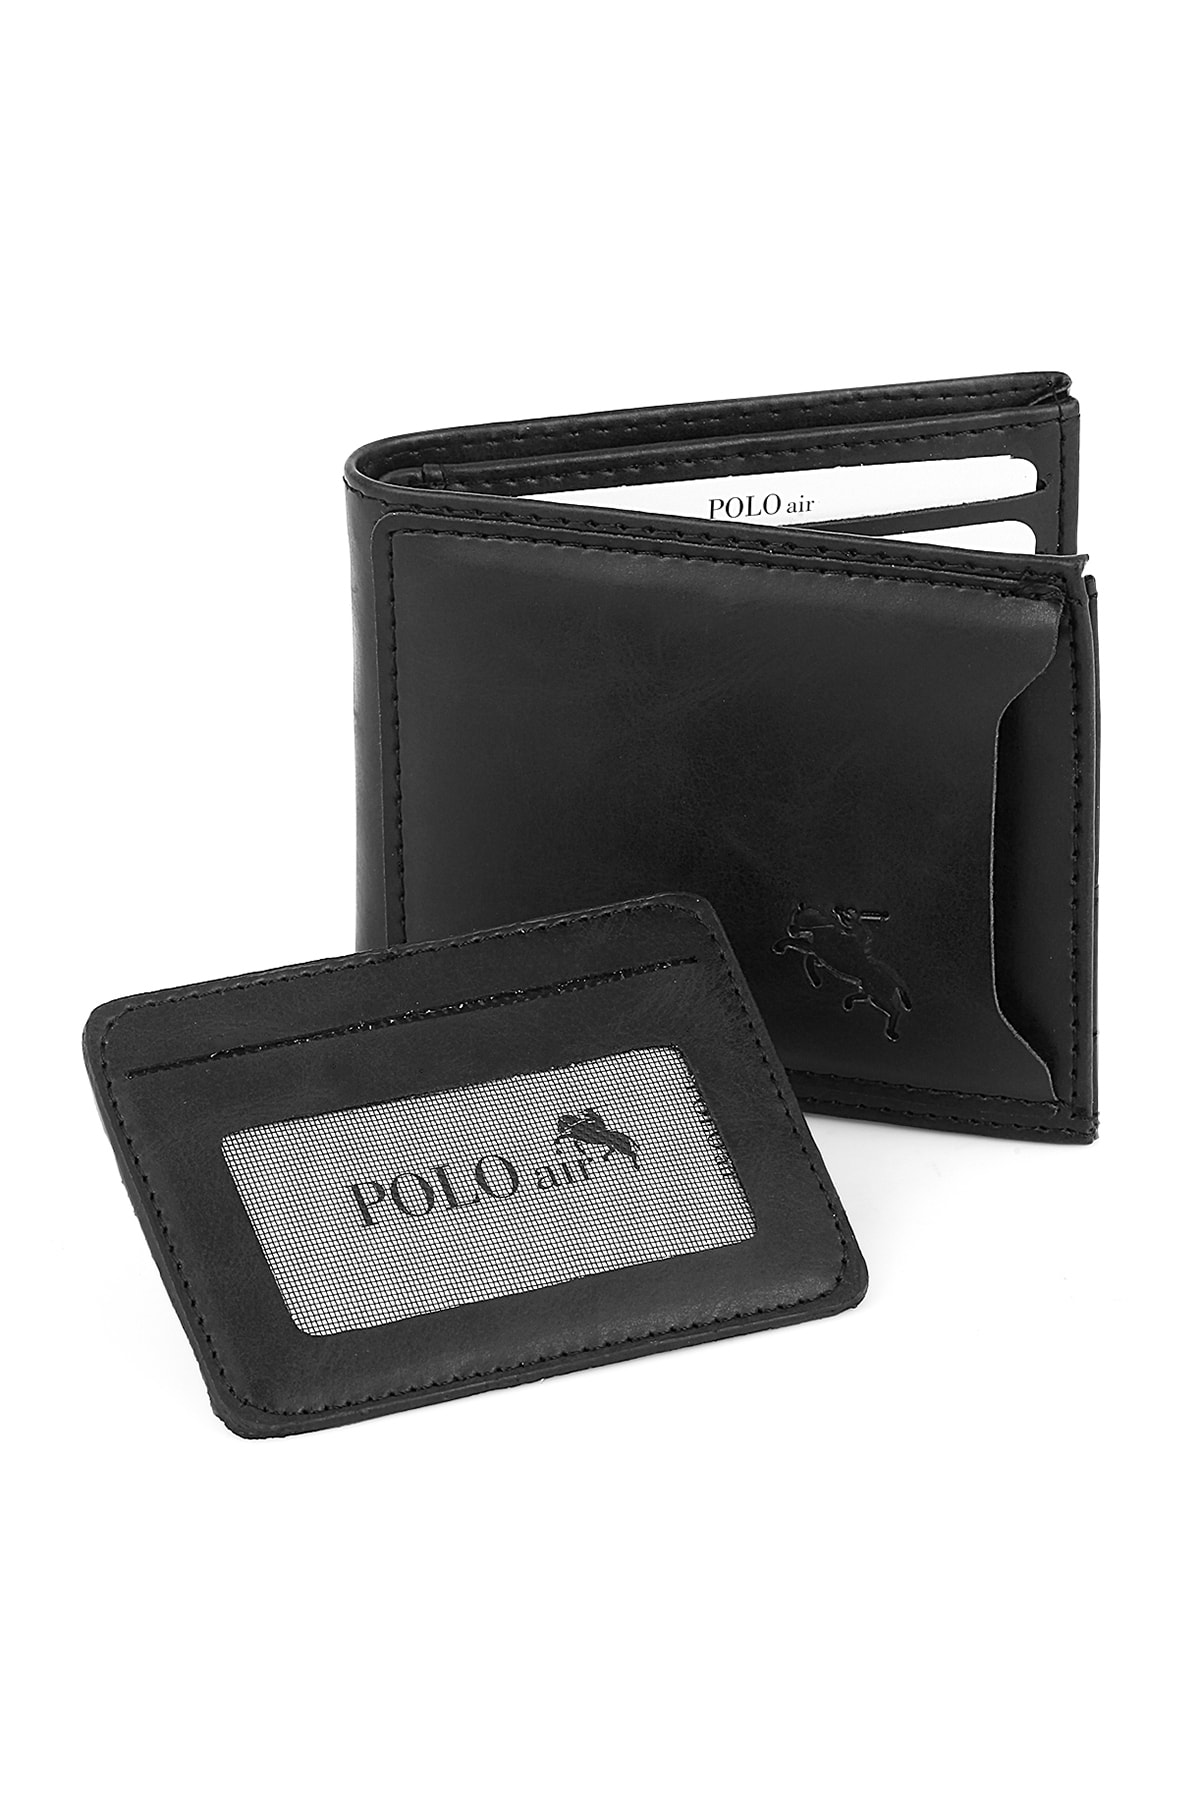 Pánska peňaženka Polo Air